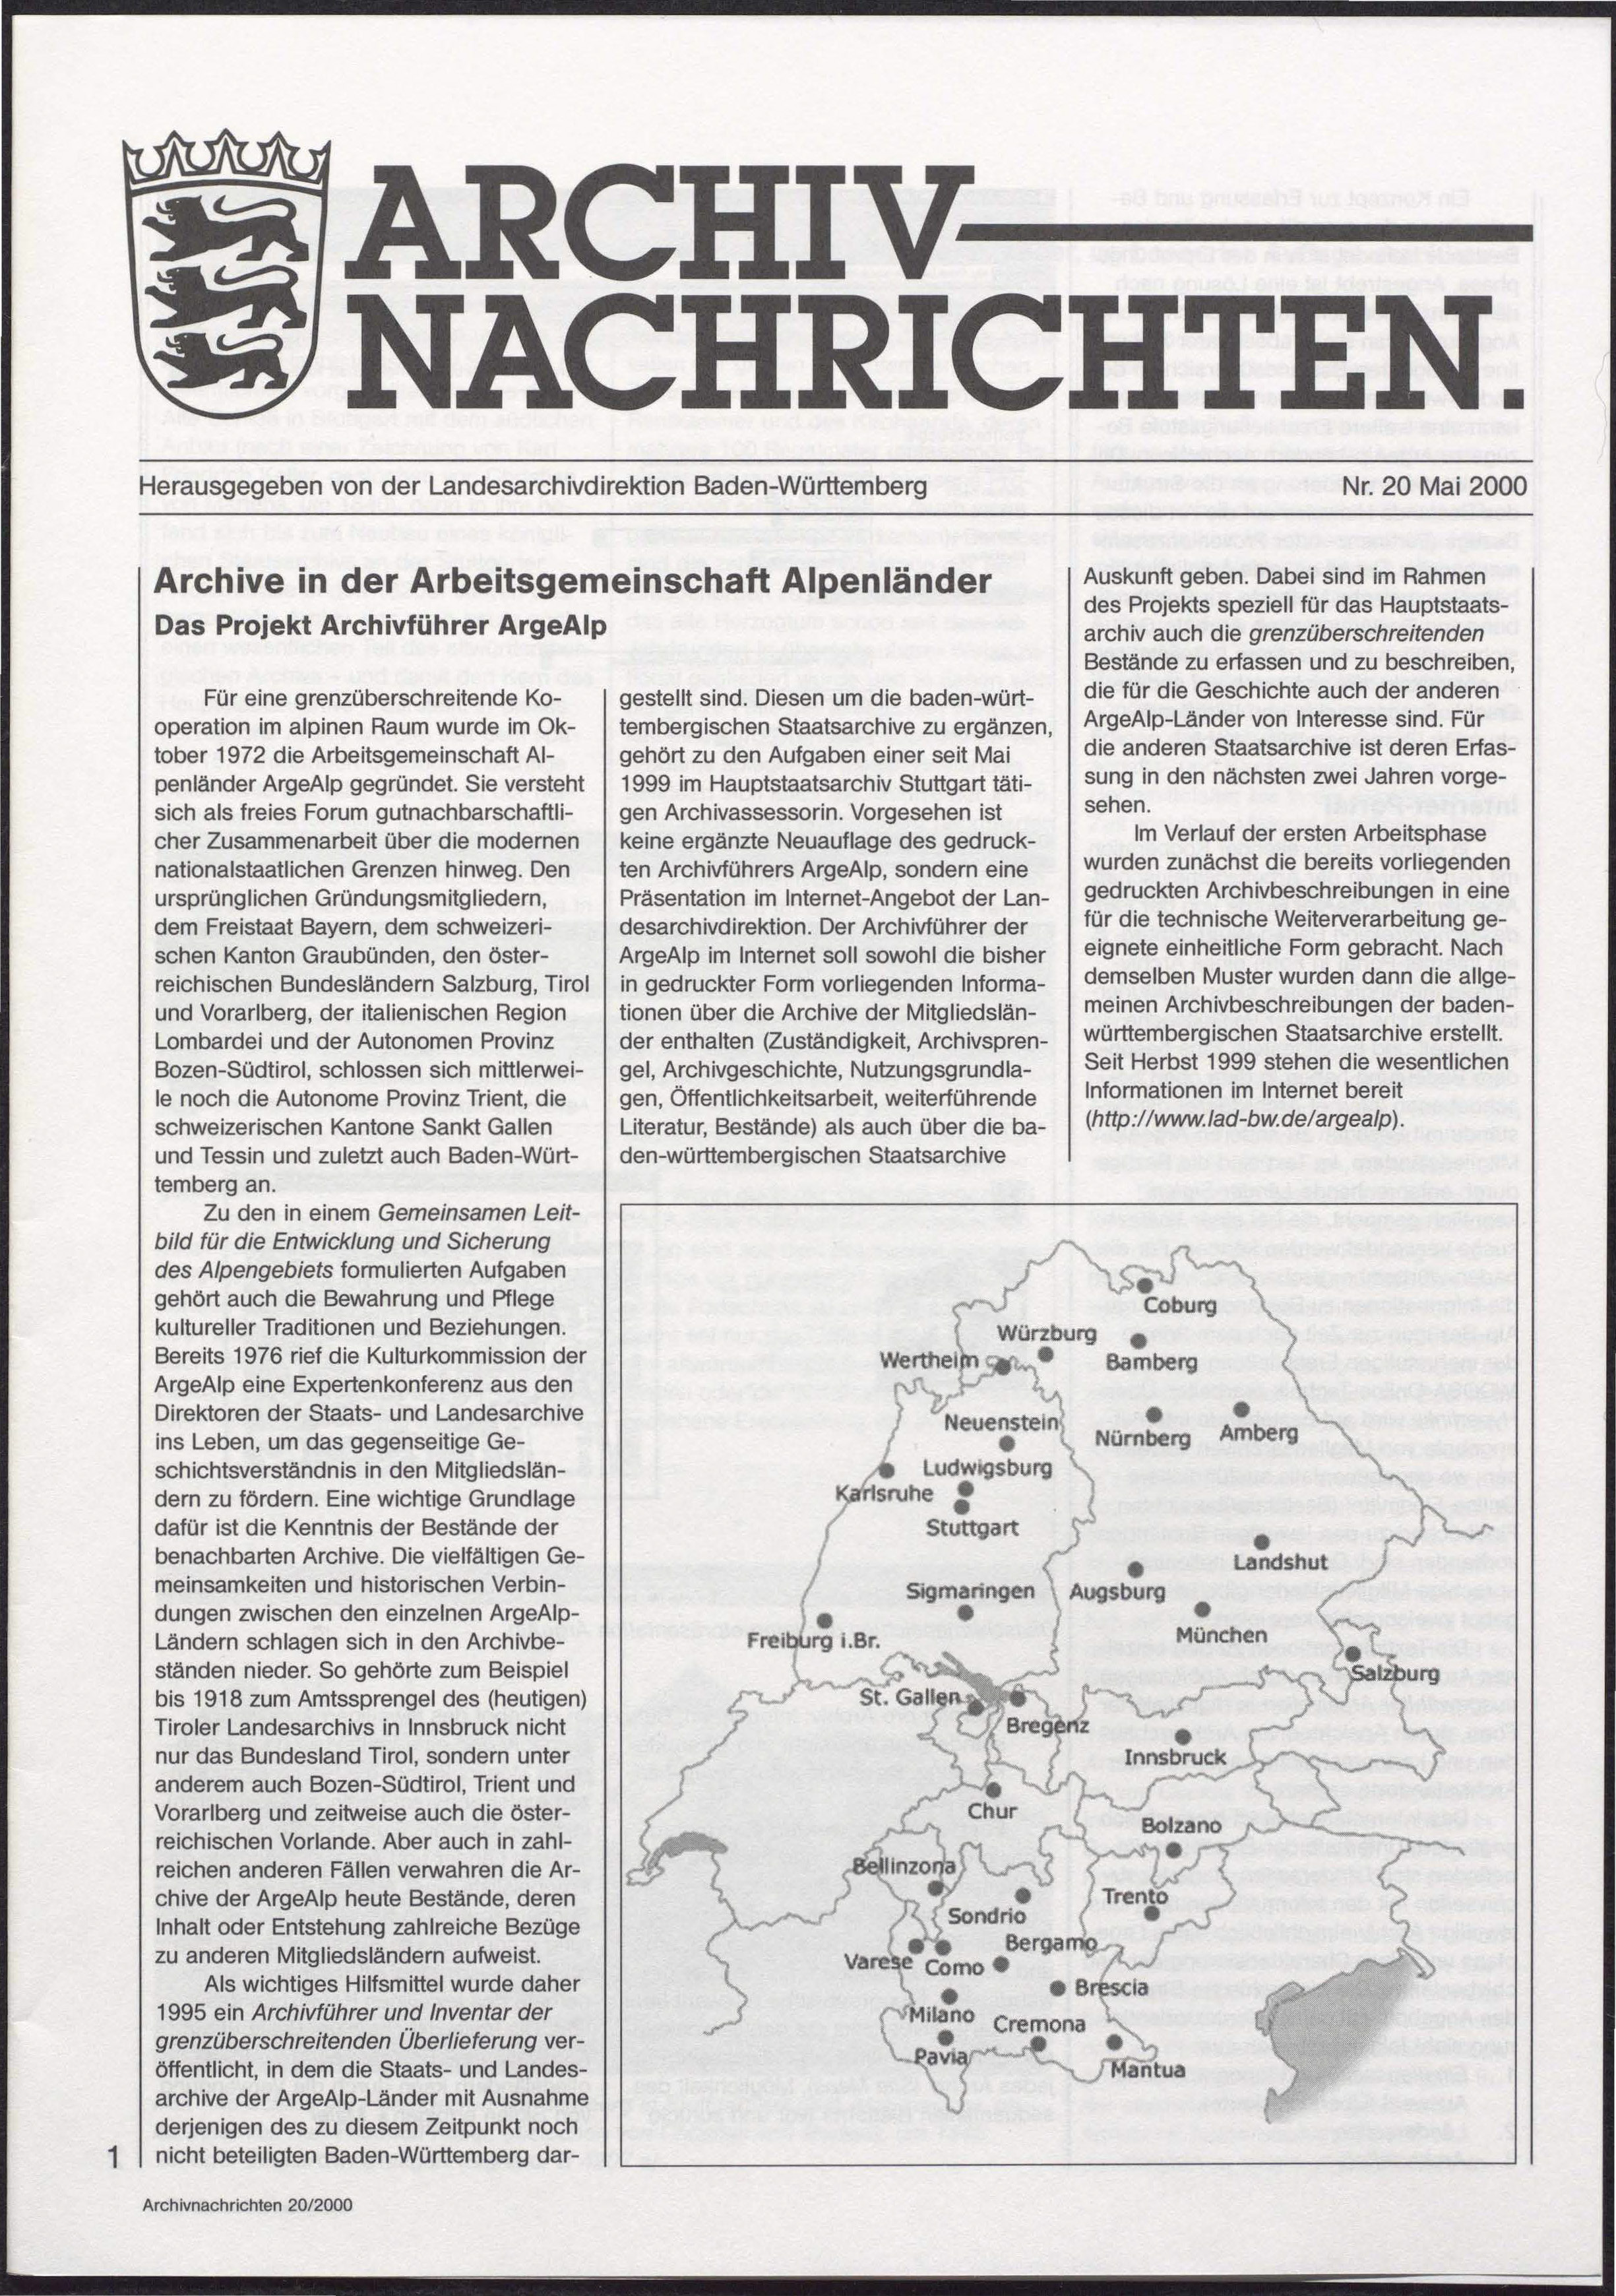                     Ansehen Nr. 20 (2000): Archivnachrichten
                